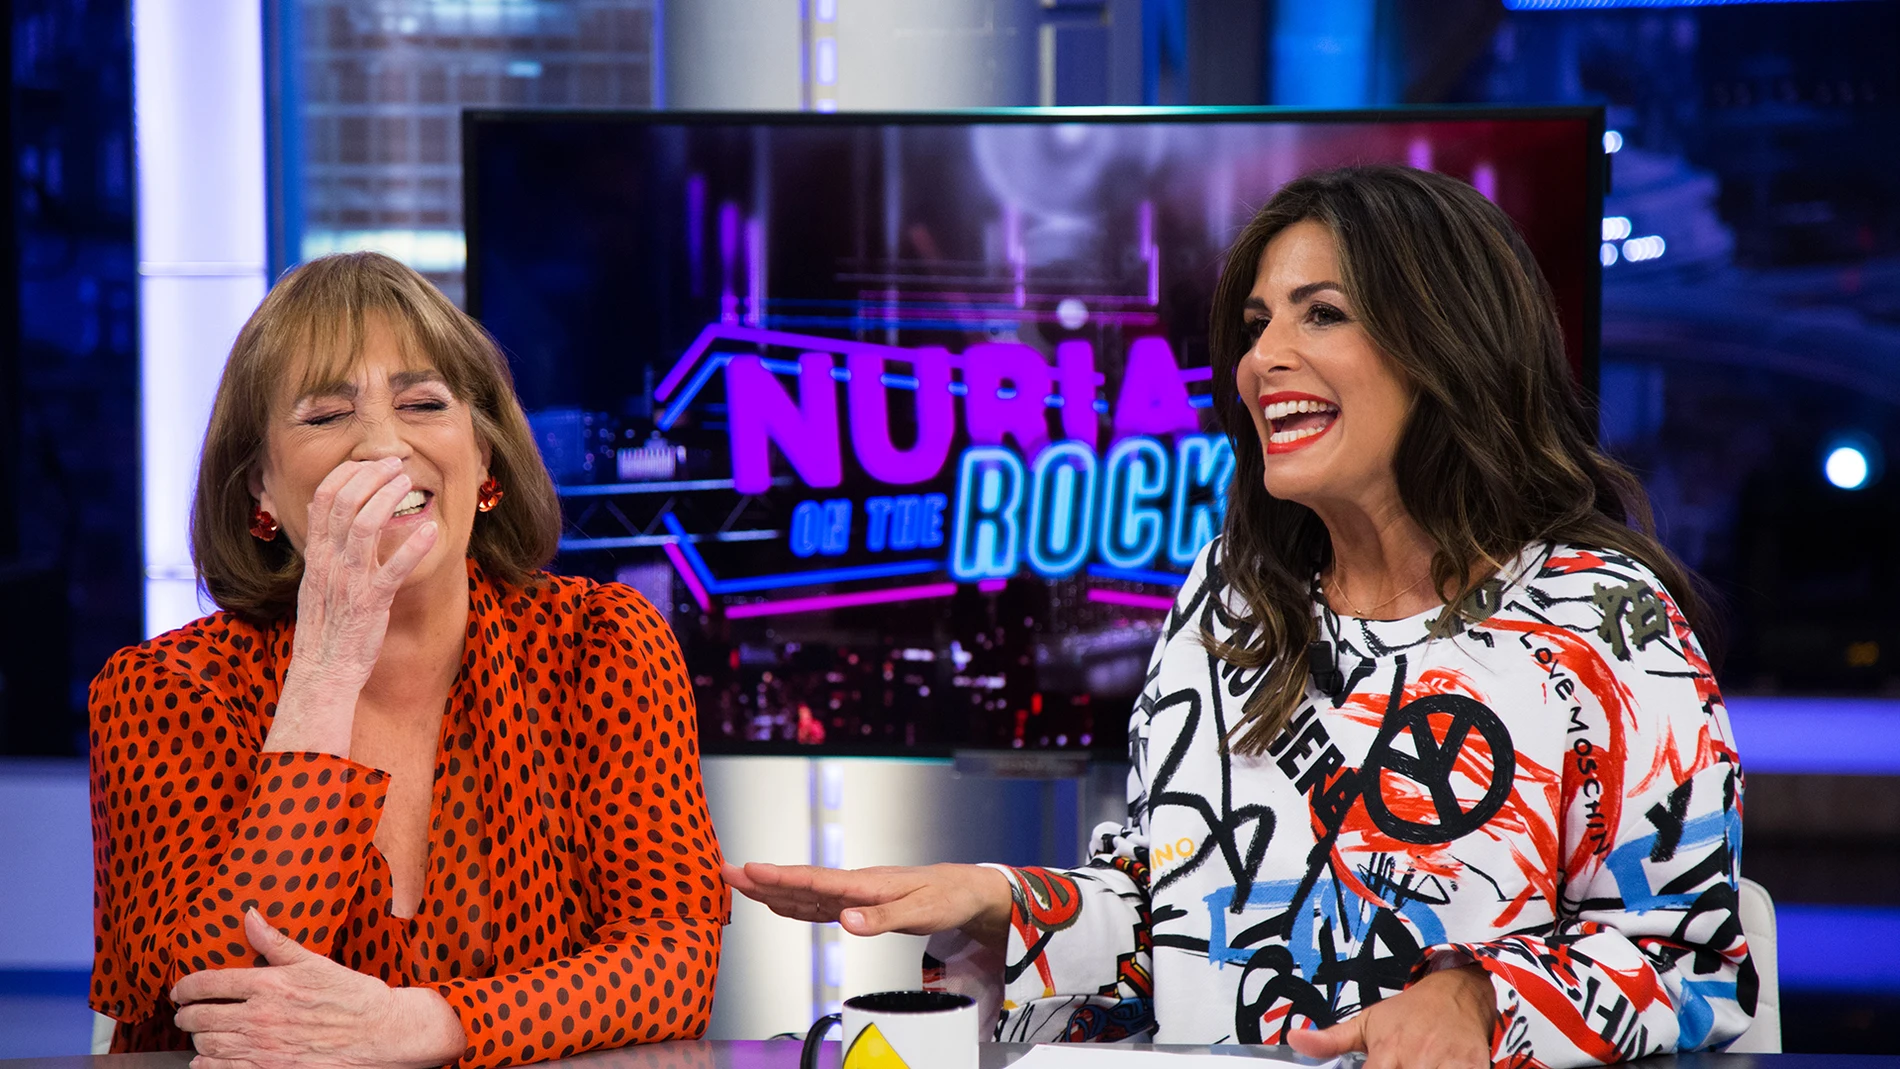 Nuria Roca y Carmen Maura aconsejan sobre el sexo en la edad madura